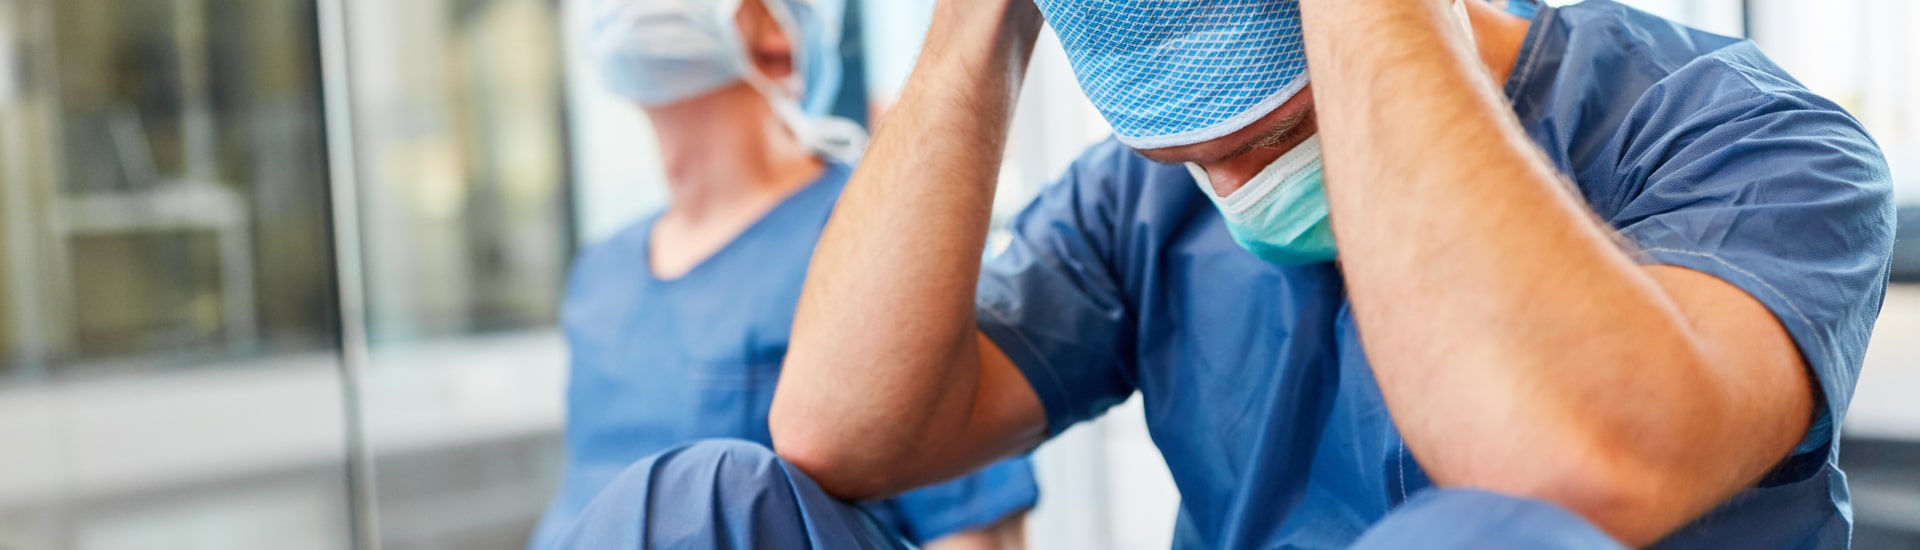 Conozca los errores más frecuentes en la administración de anestesia